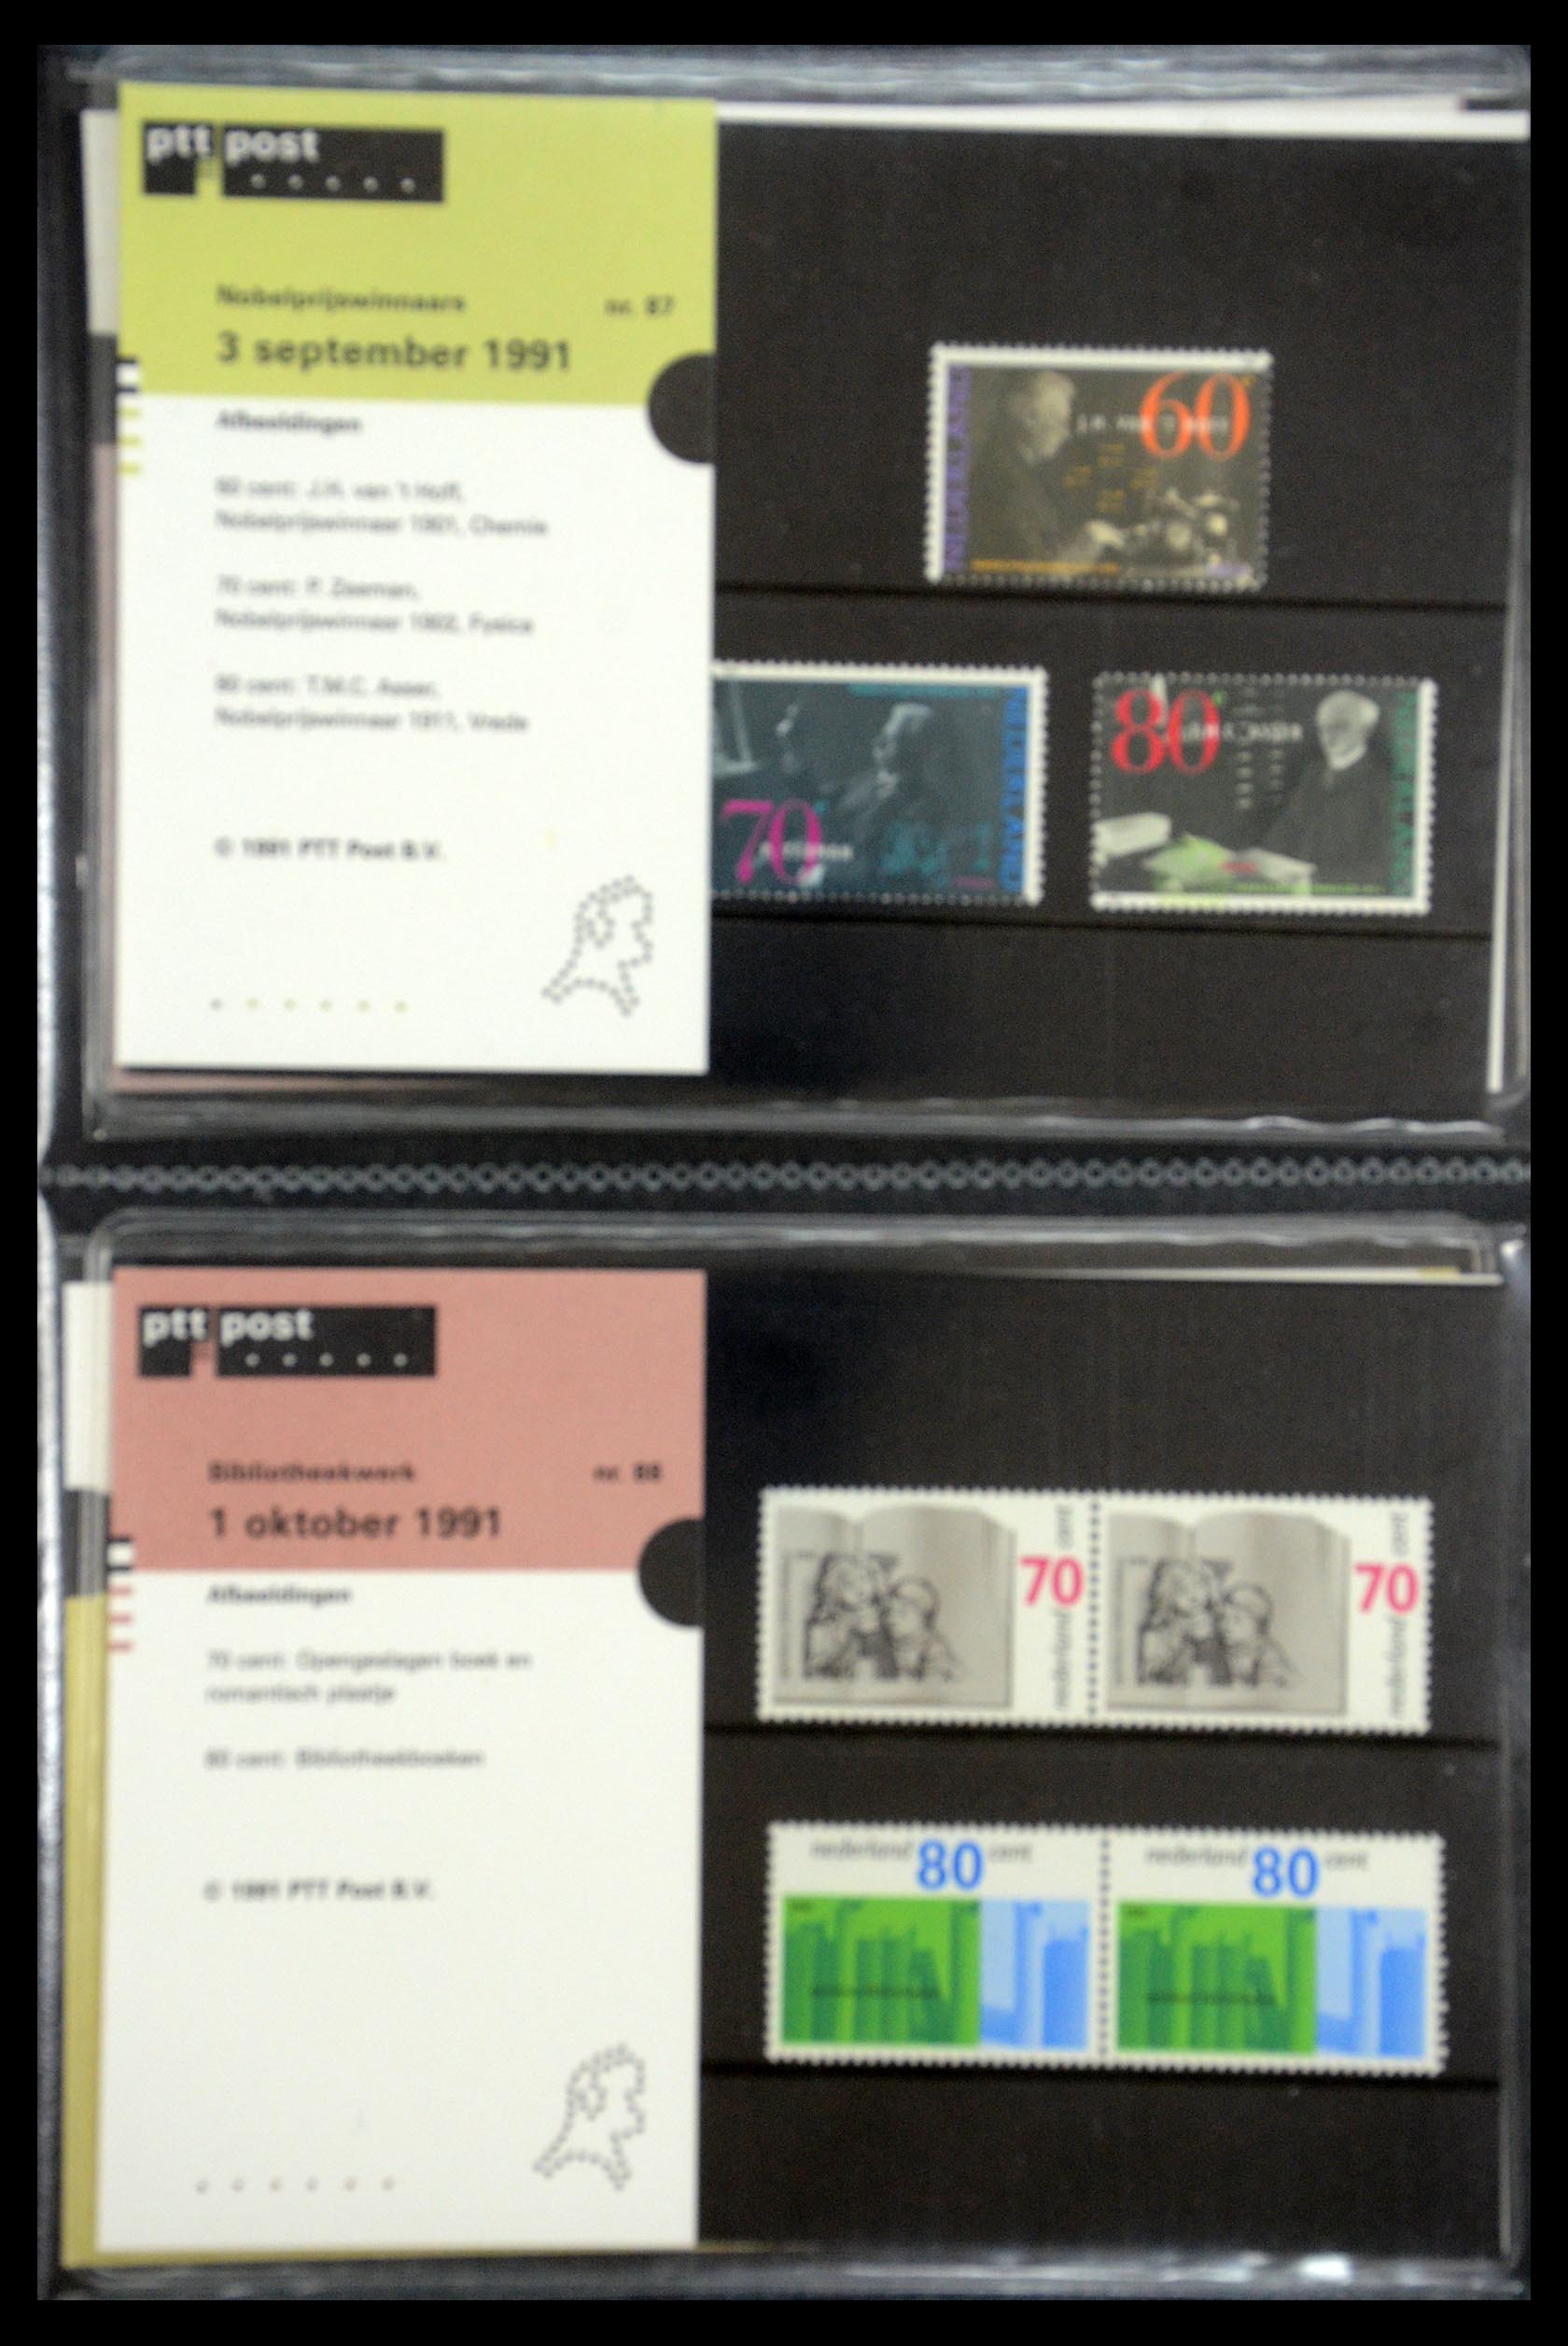 35187 044 - Stamp Collection 35187 Netherlands PTT presentation packs 1982-2019!